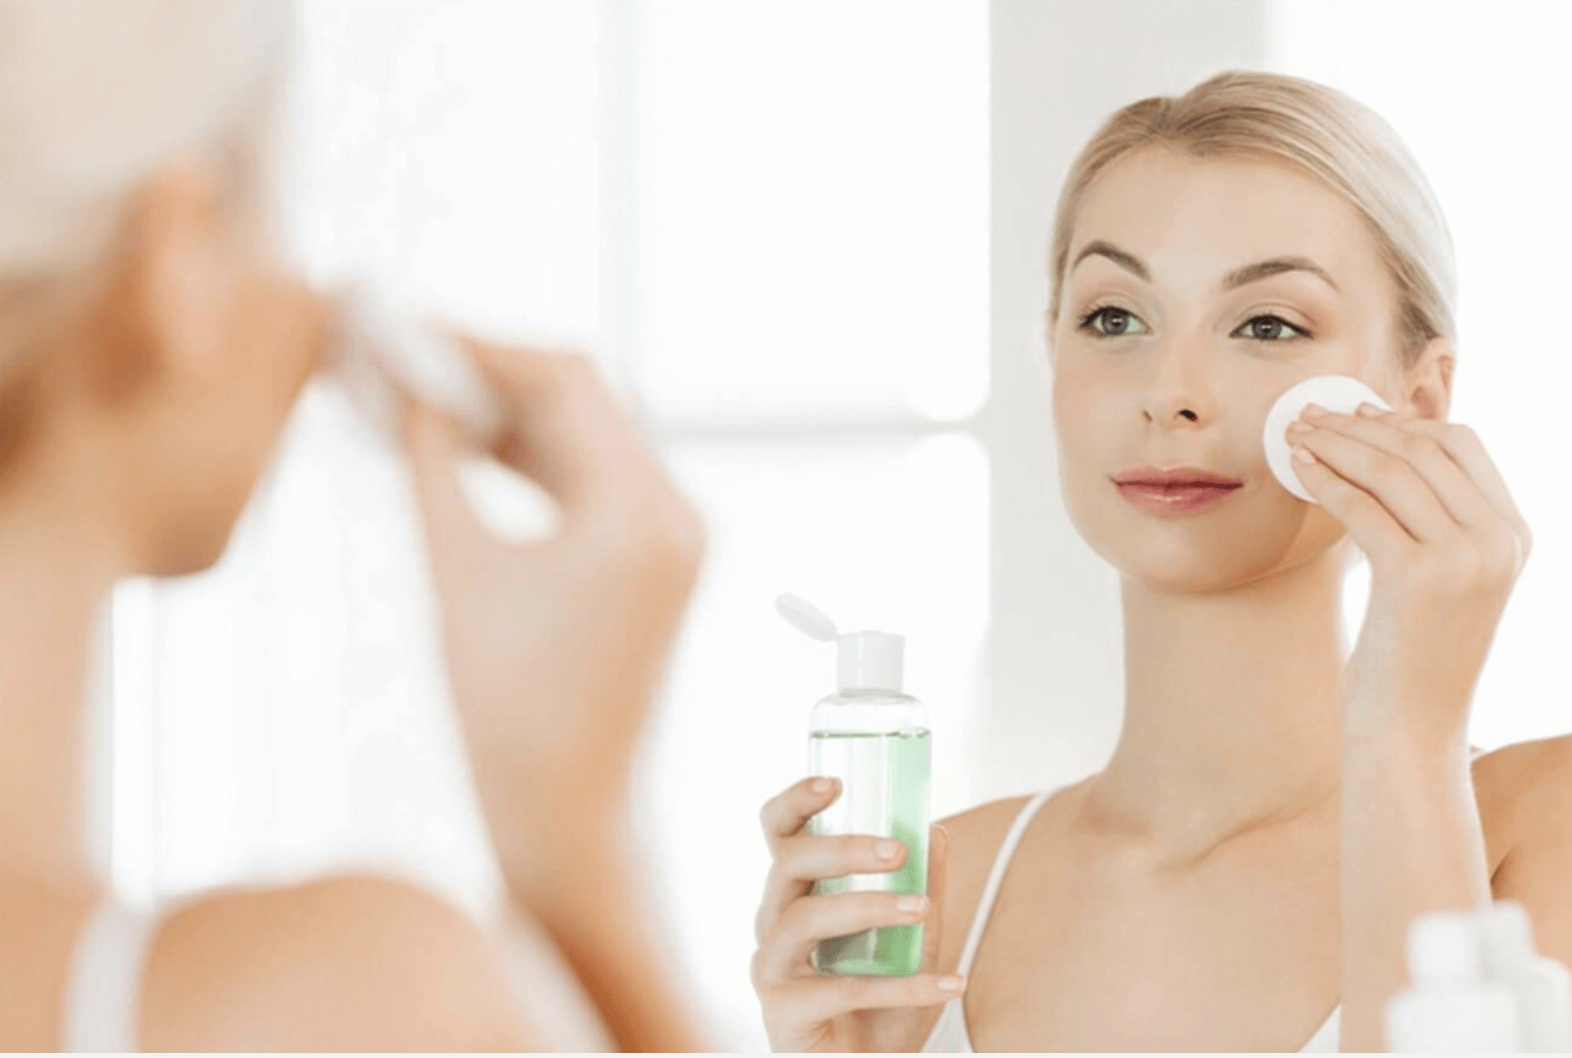 HCM - Quy trình chăm sóc da mặt trong 1 tuần hiệu quả Quy-trinh-cham-soc-da-11